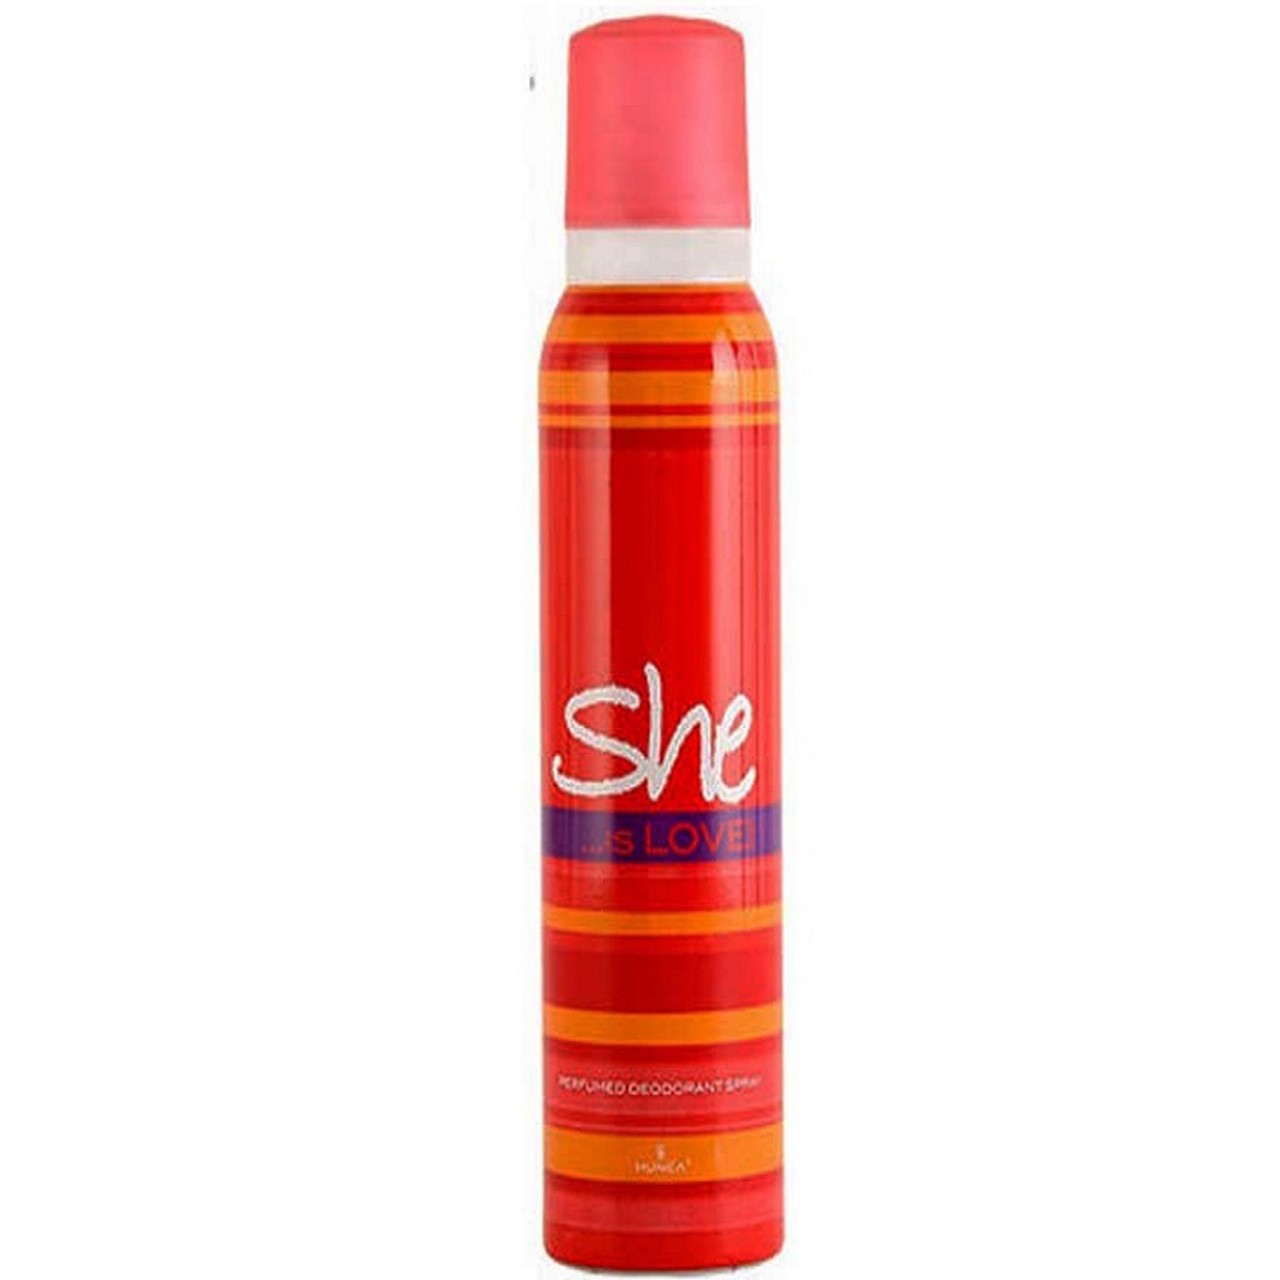 SHE is Love Body Spray Deodorant - Red - 200 ml - Sale price - Buy ...